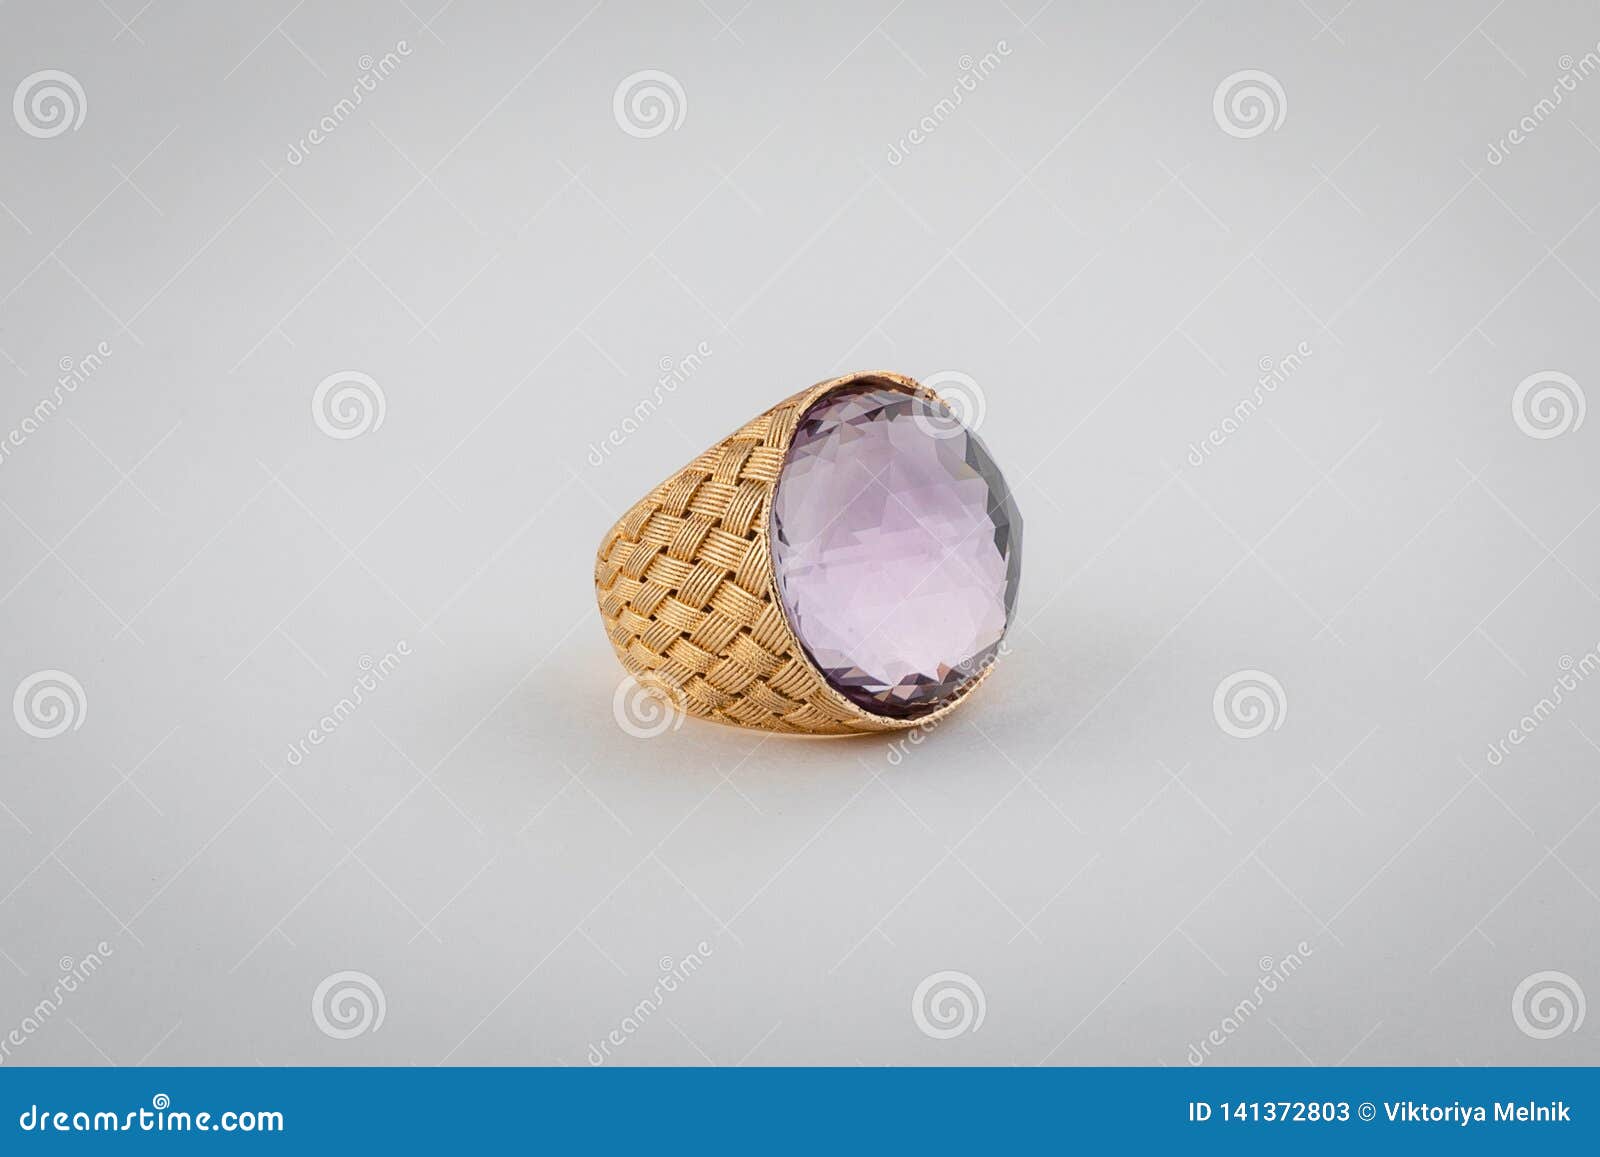 Para Mujer, De Mimbre, Anillo De Oro Con Una Piedra Púrpura Natural Grande  En El Centro, Aislado En Un Fondo Blanco Imagen de archivo - Imagen de  lujo, travieso: 141372803